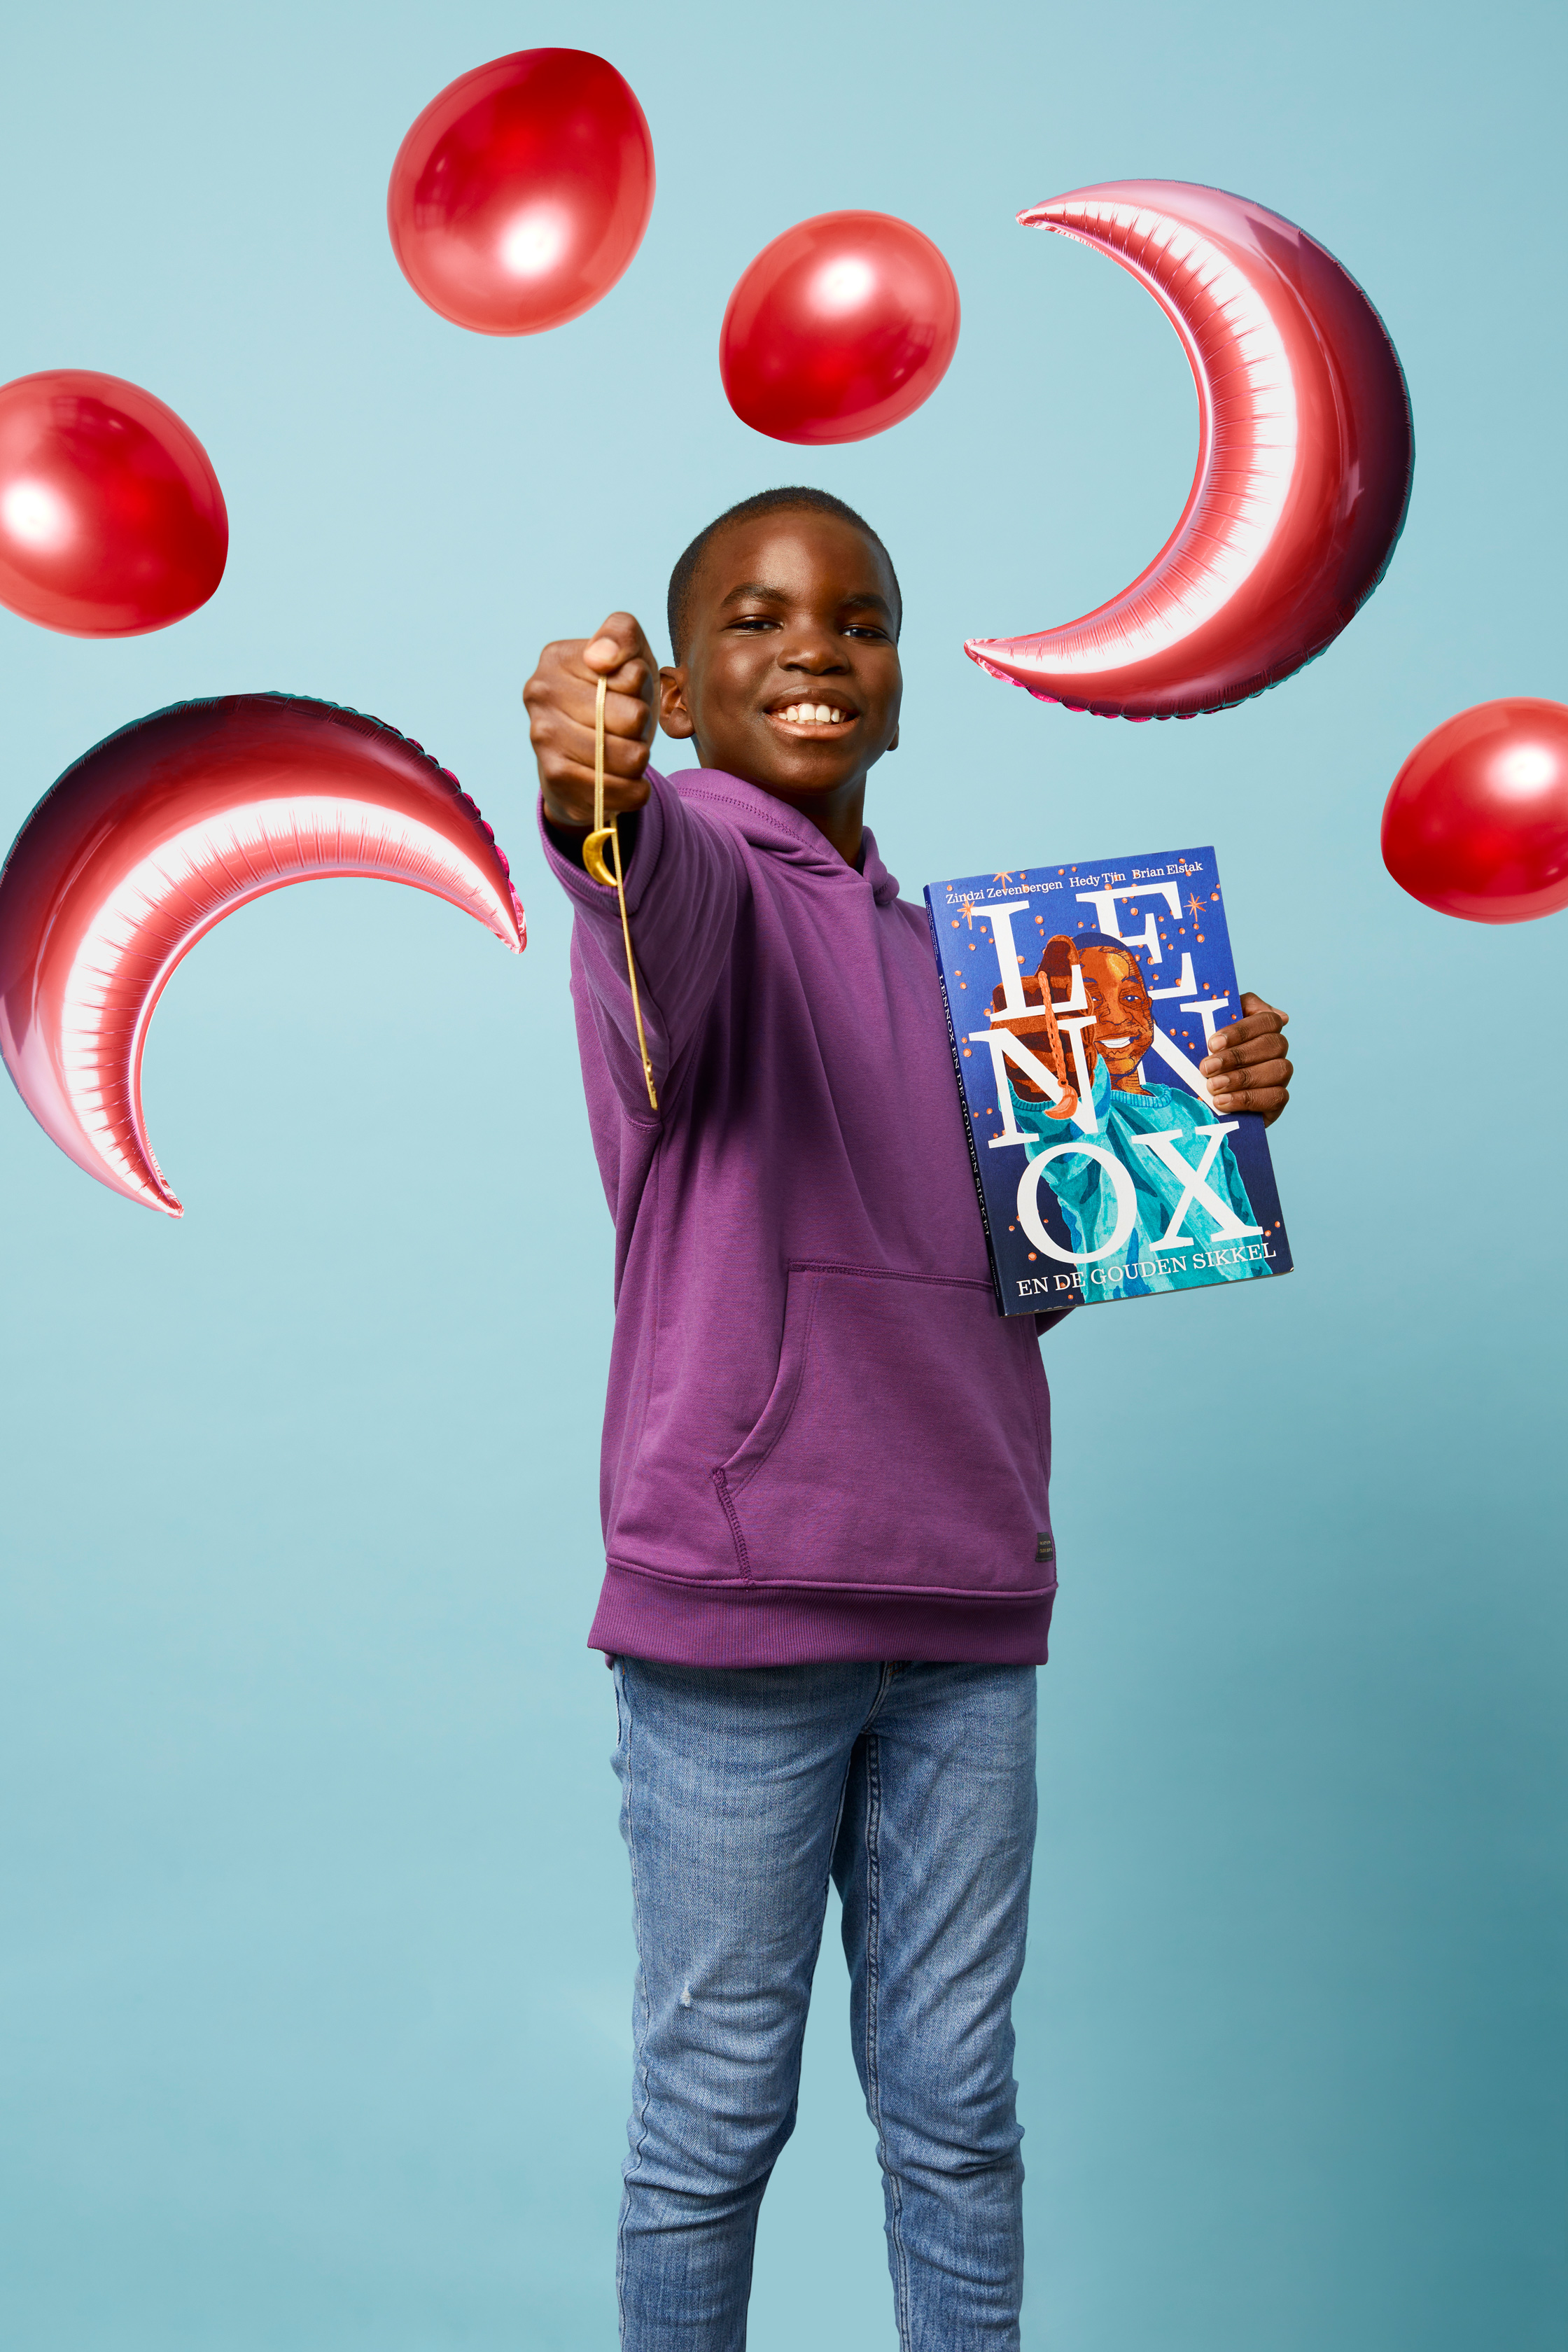 Lennox campagnebeeld; jongen met maanketting en boek 'Lennox'